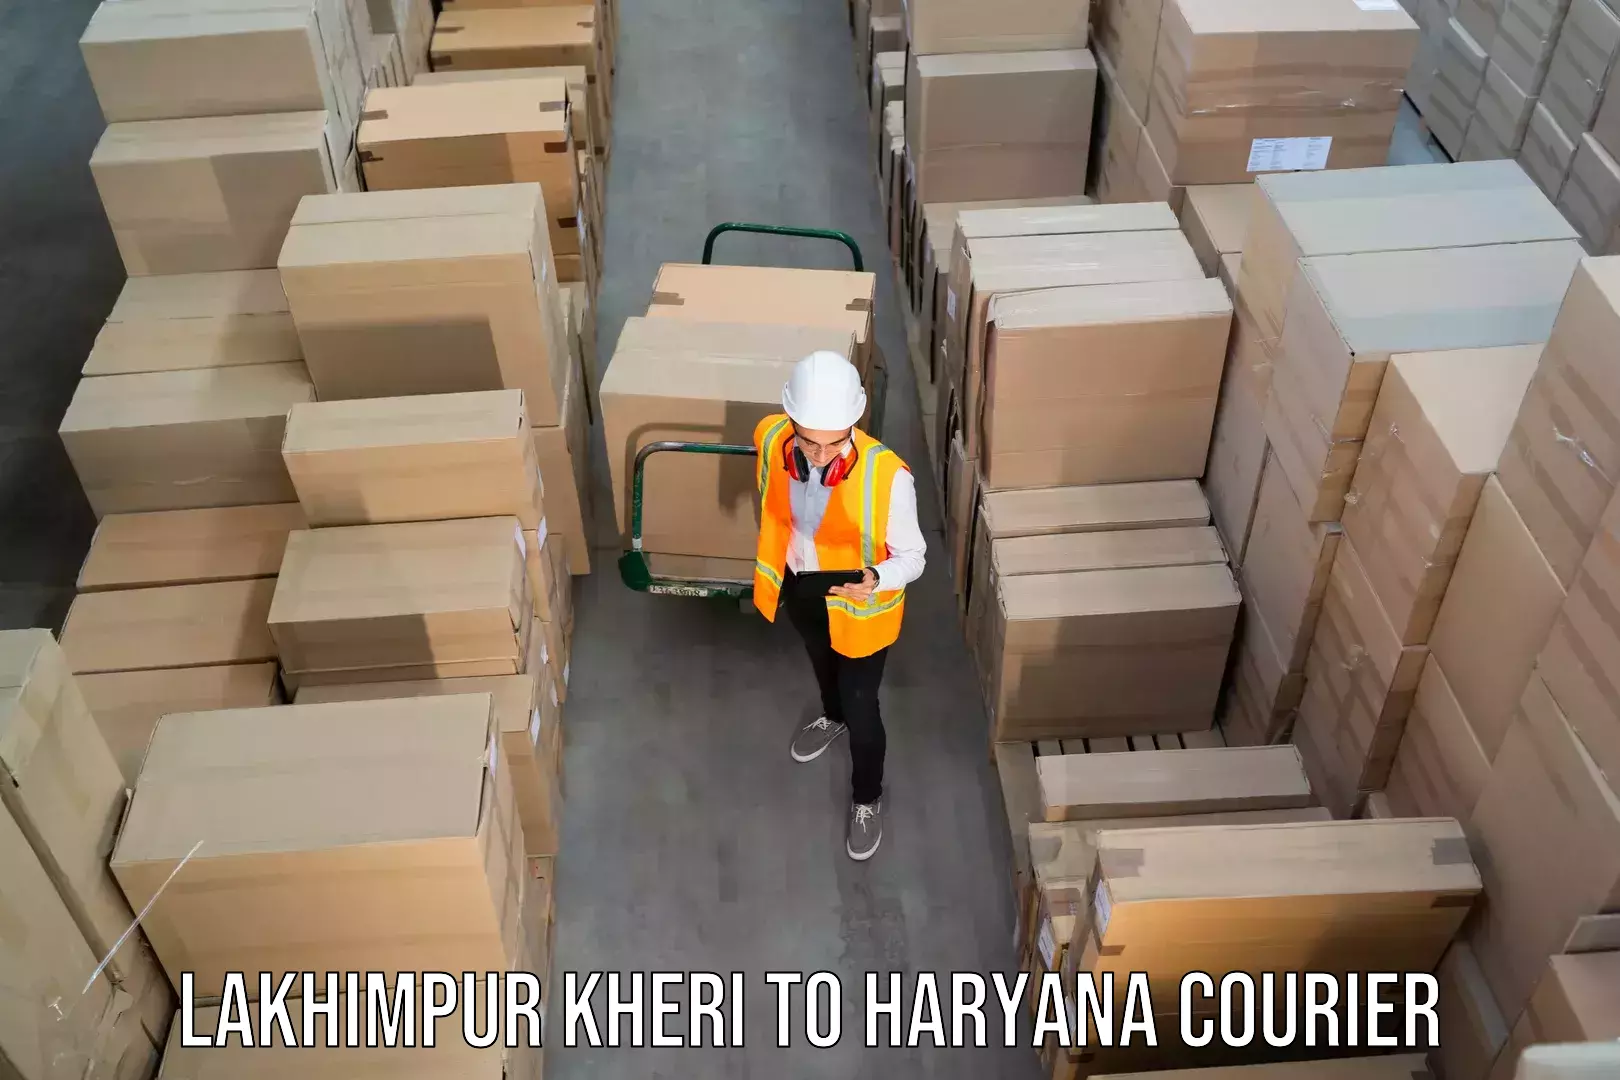 Premium courier services Lakhimpur Kheri to Nuh